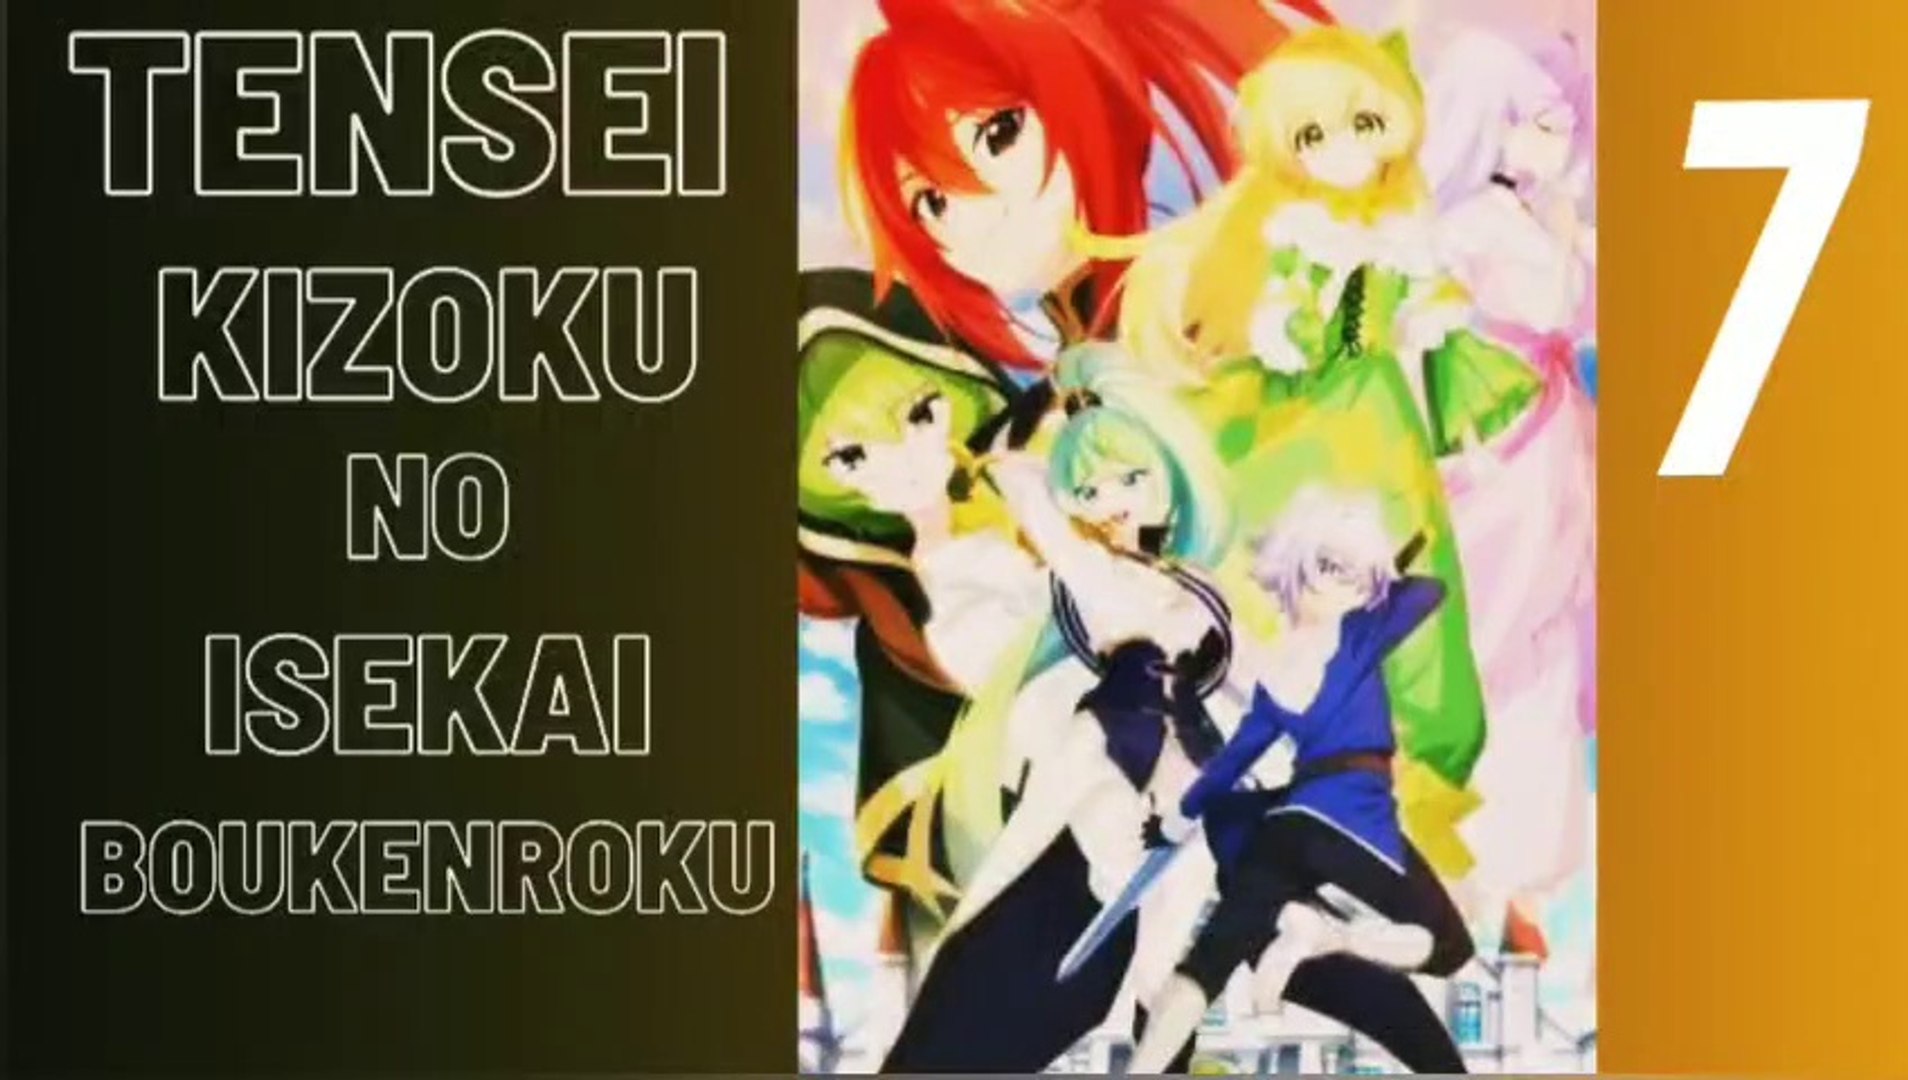 where to watch tensei kizoku no isekai boukenroku in english